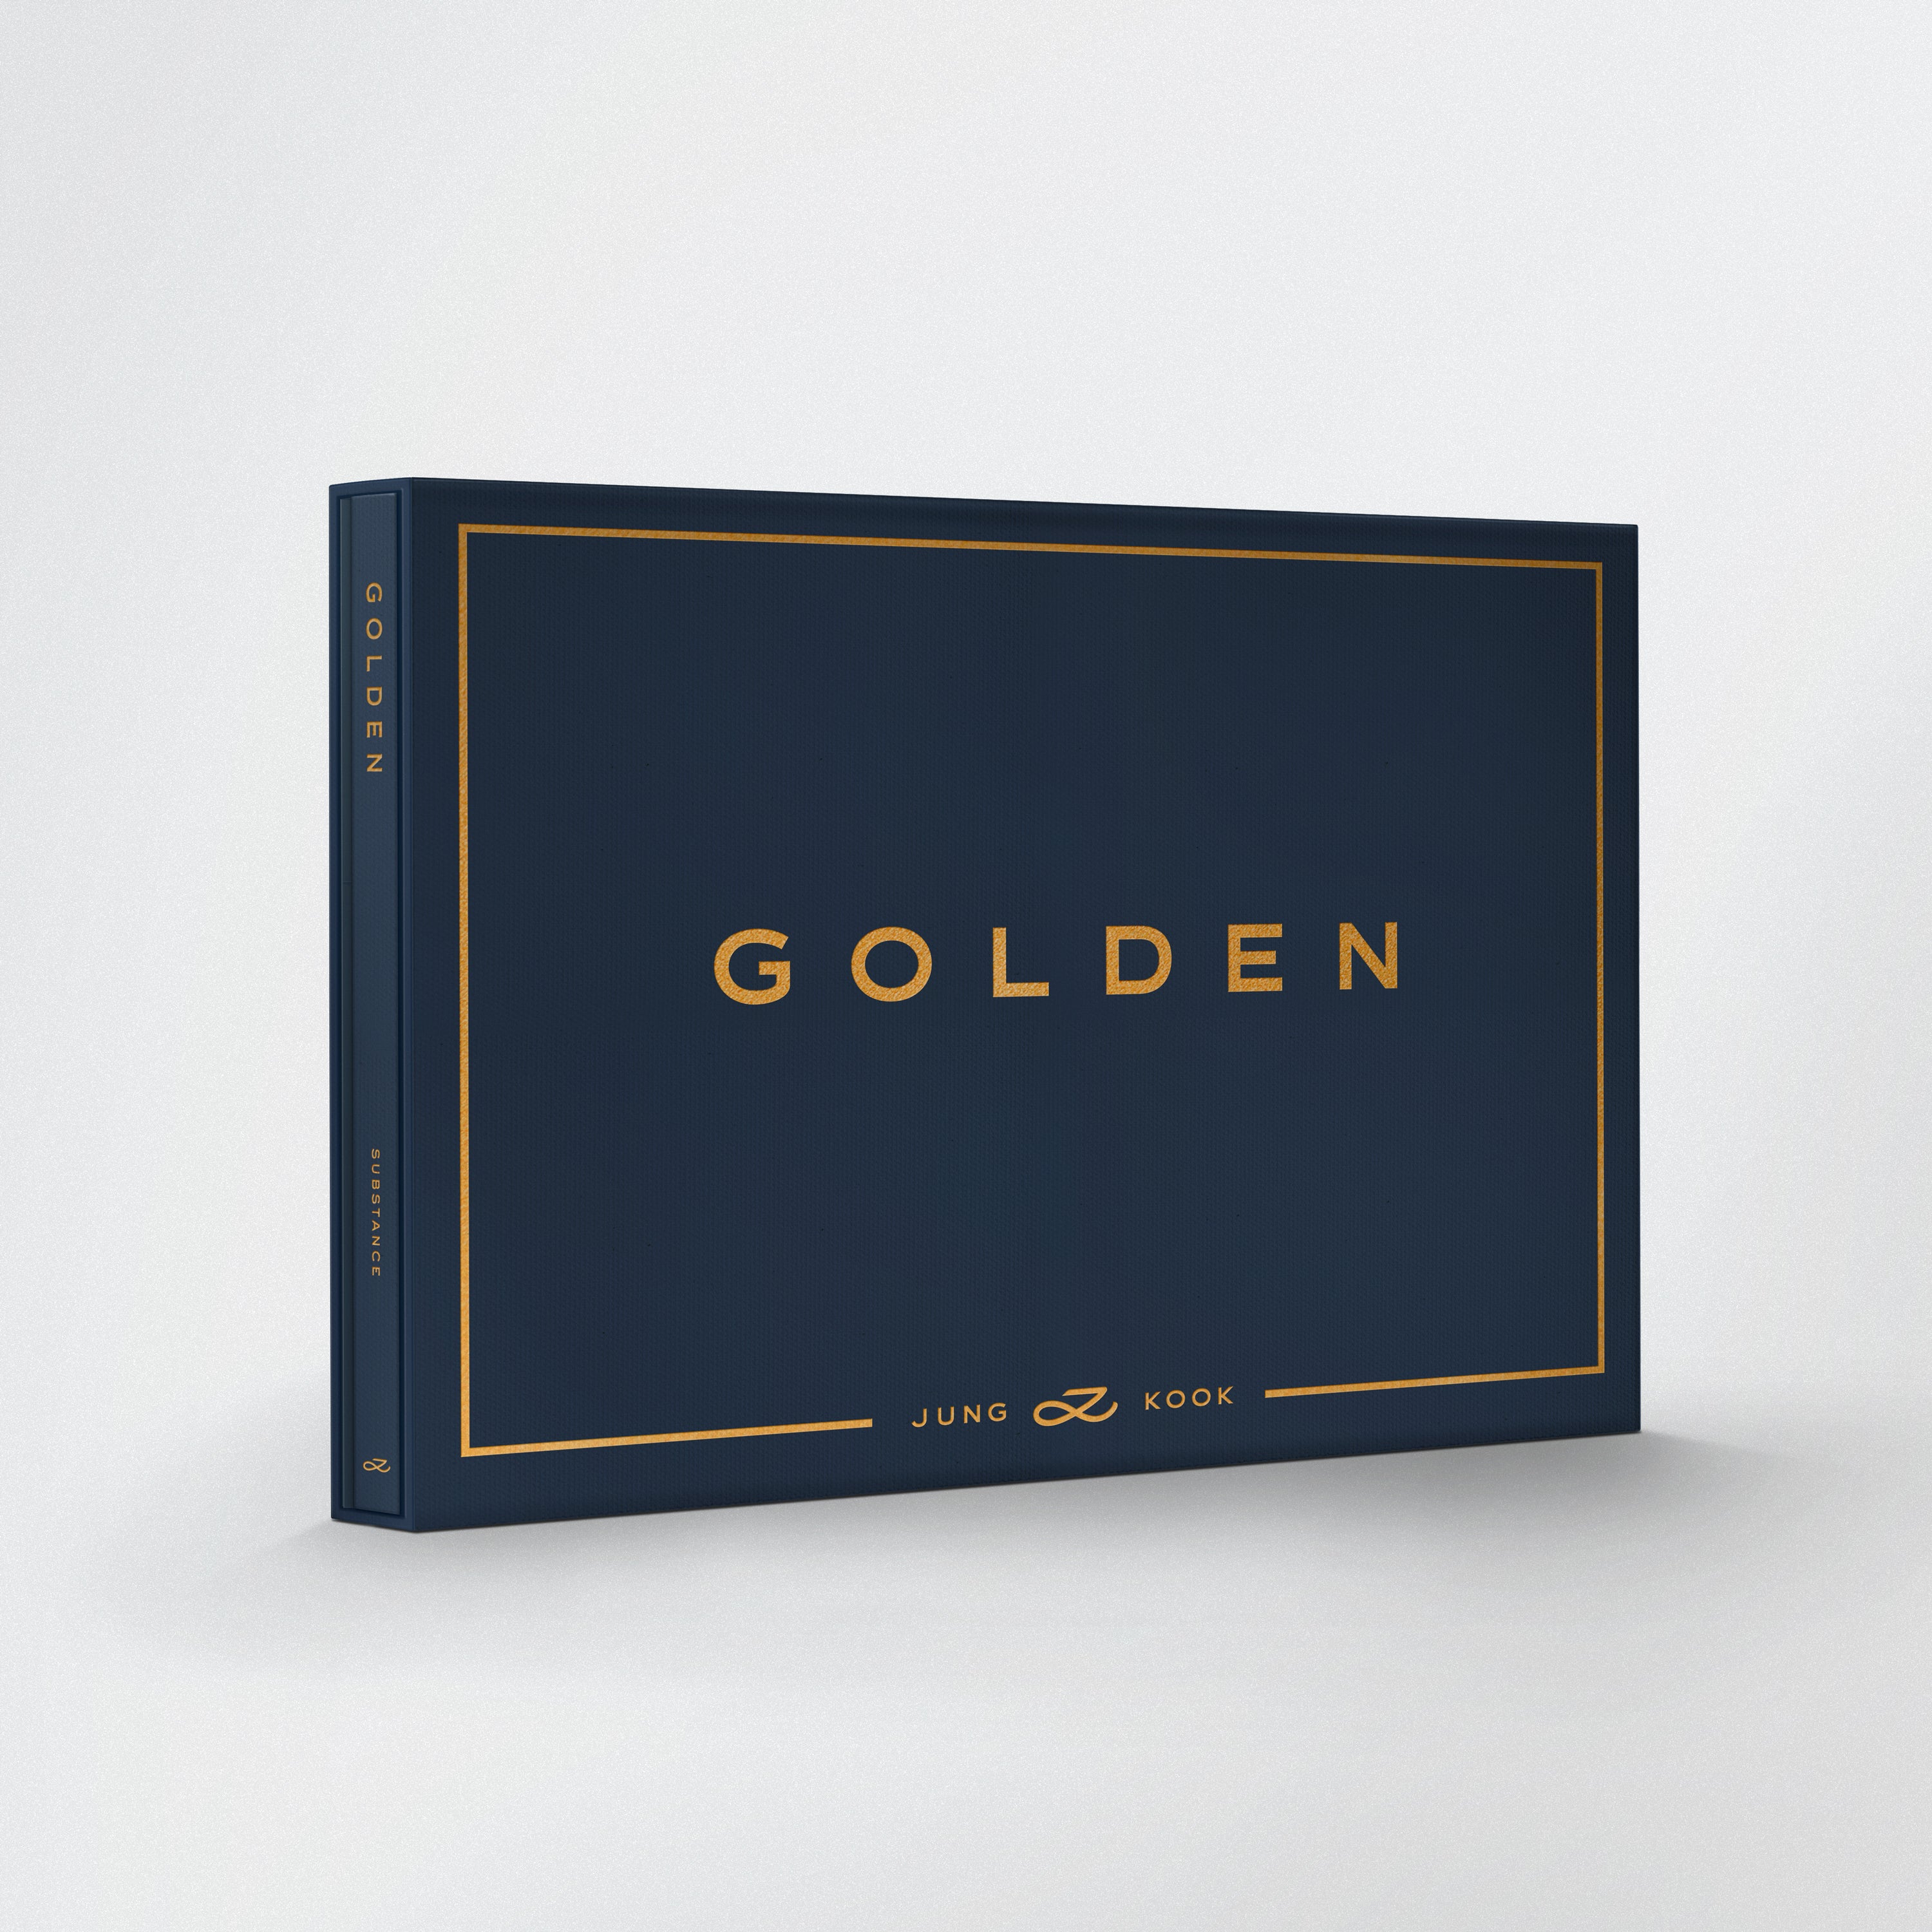 Jung Kook - Golden (SUBSTANCE)